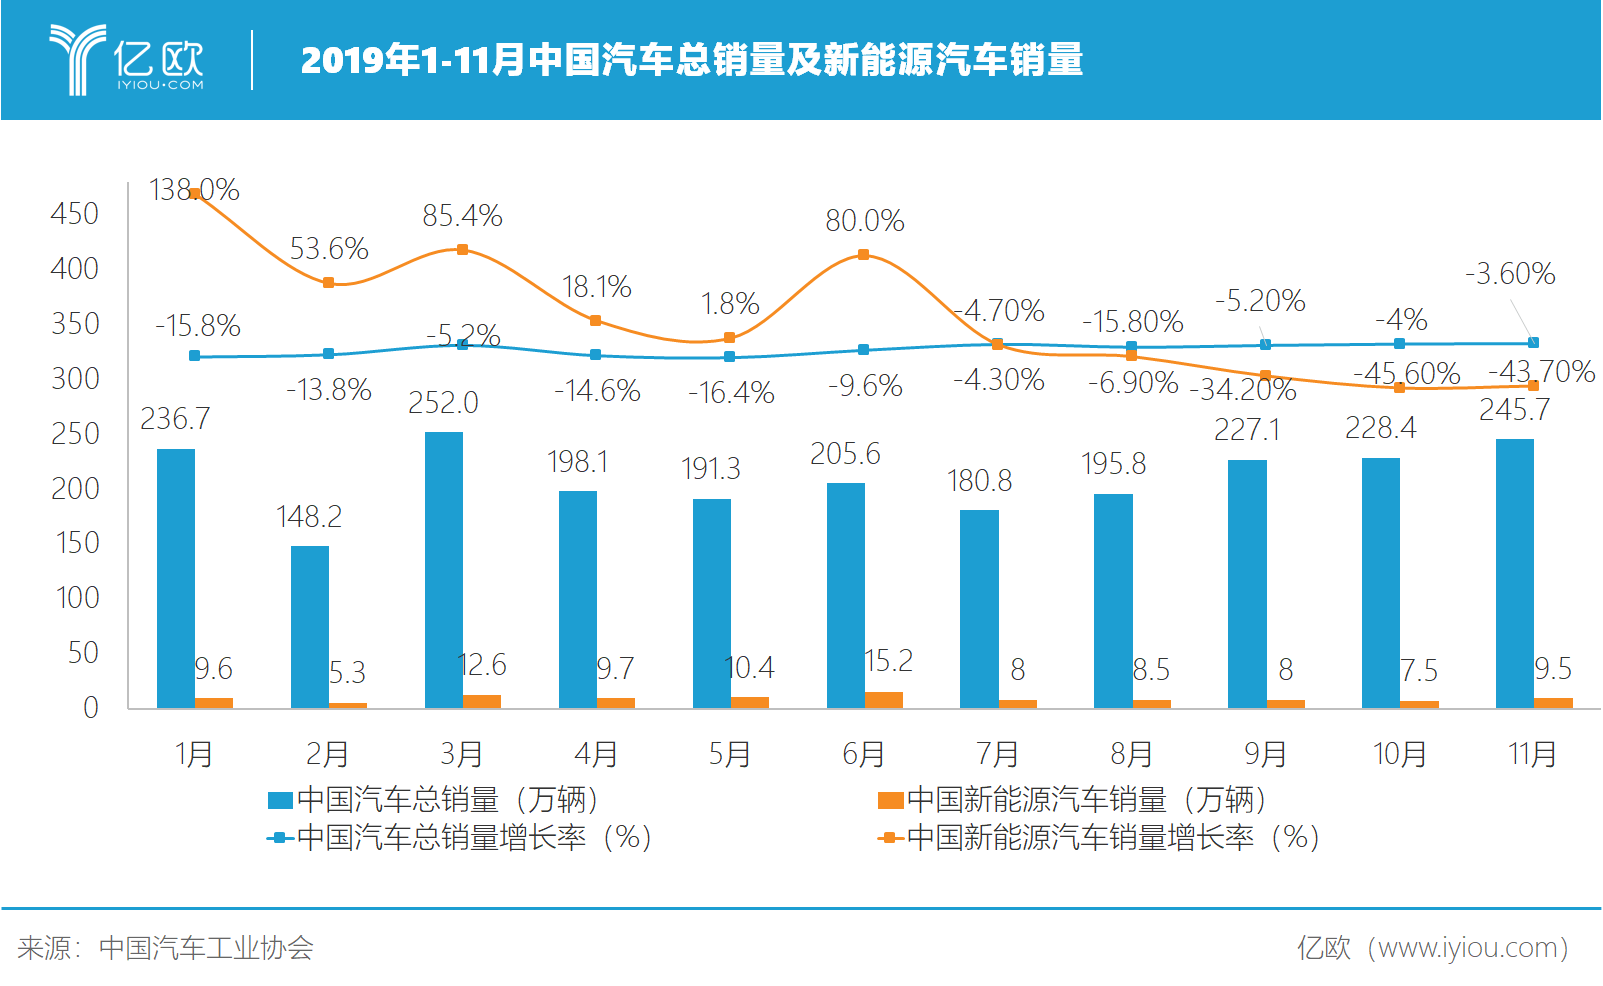 数读|中国汽车出口10年“跨越式”增长 晋升全球第二大出口国_手机新浪网